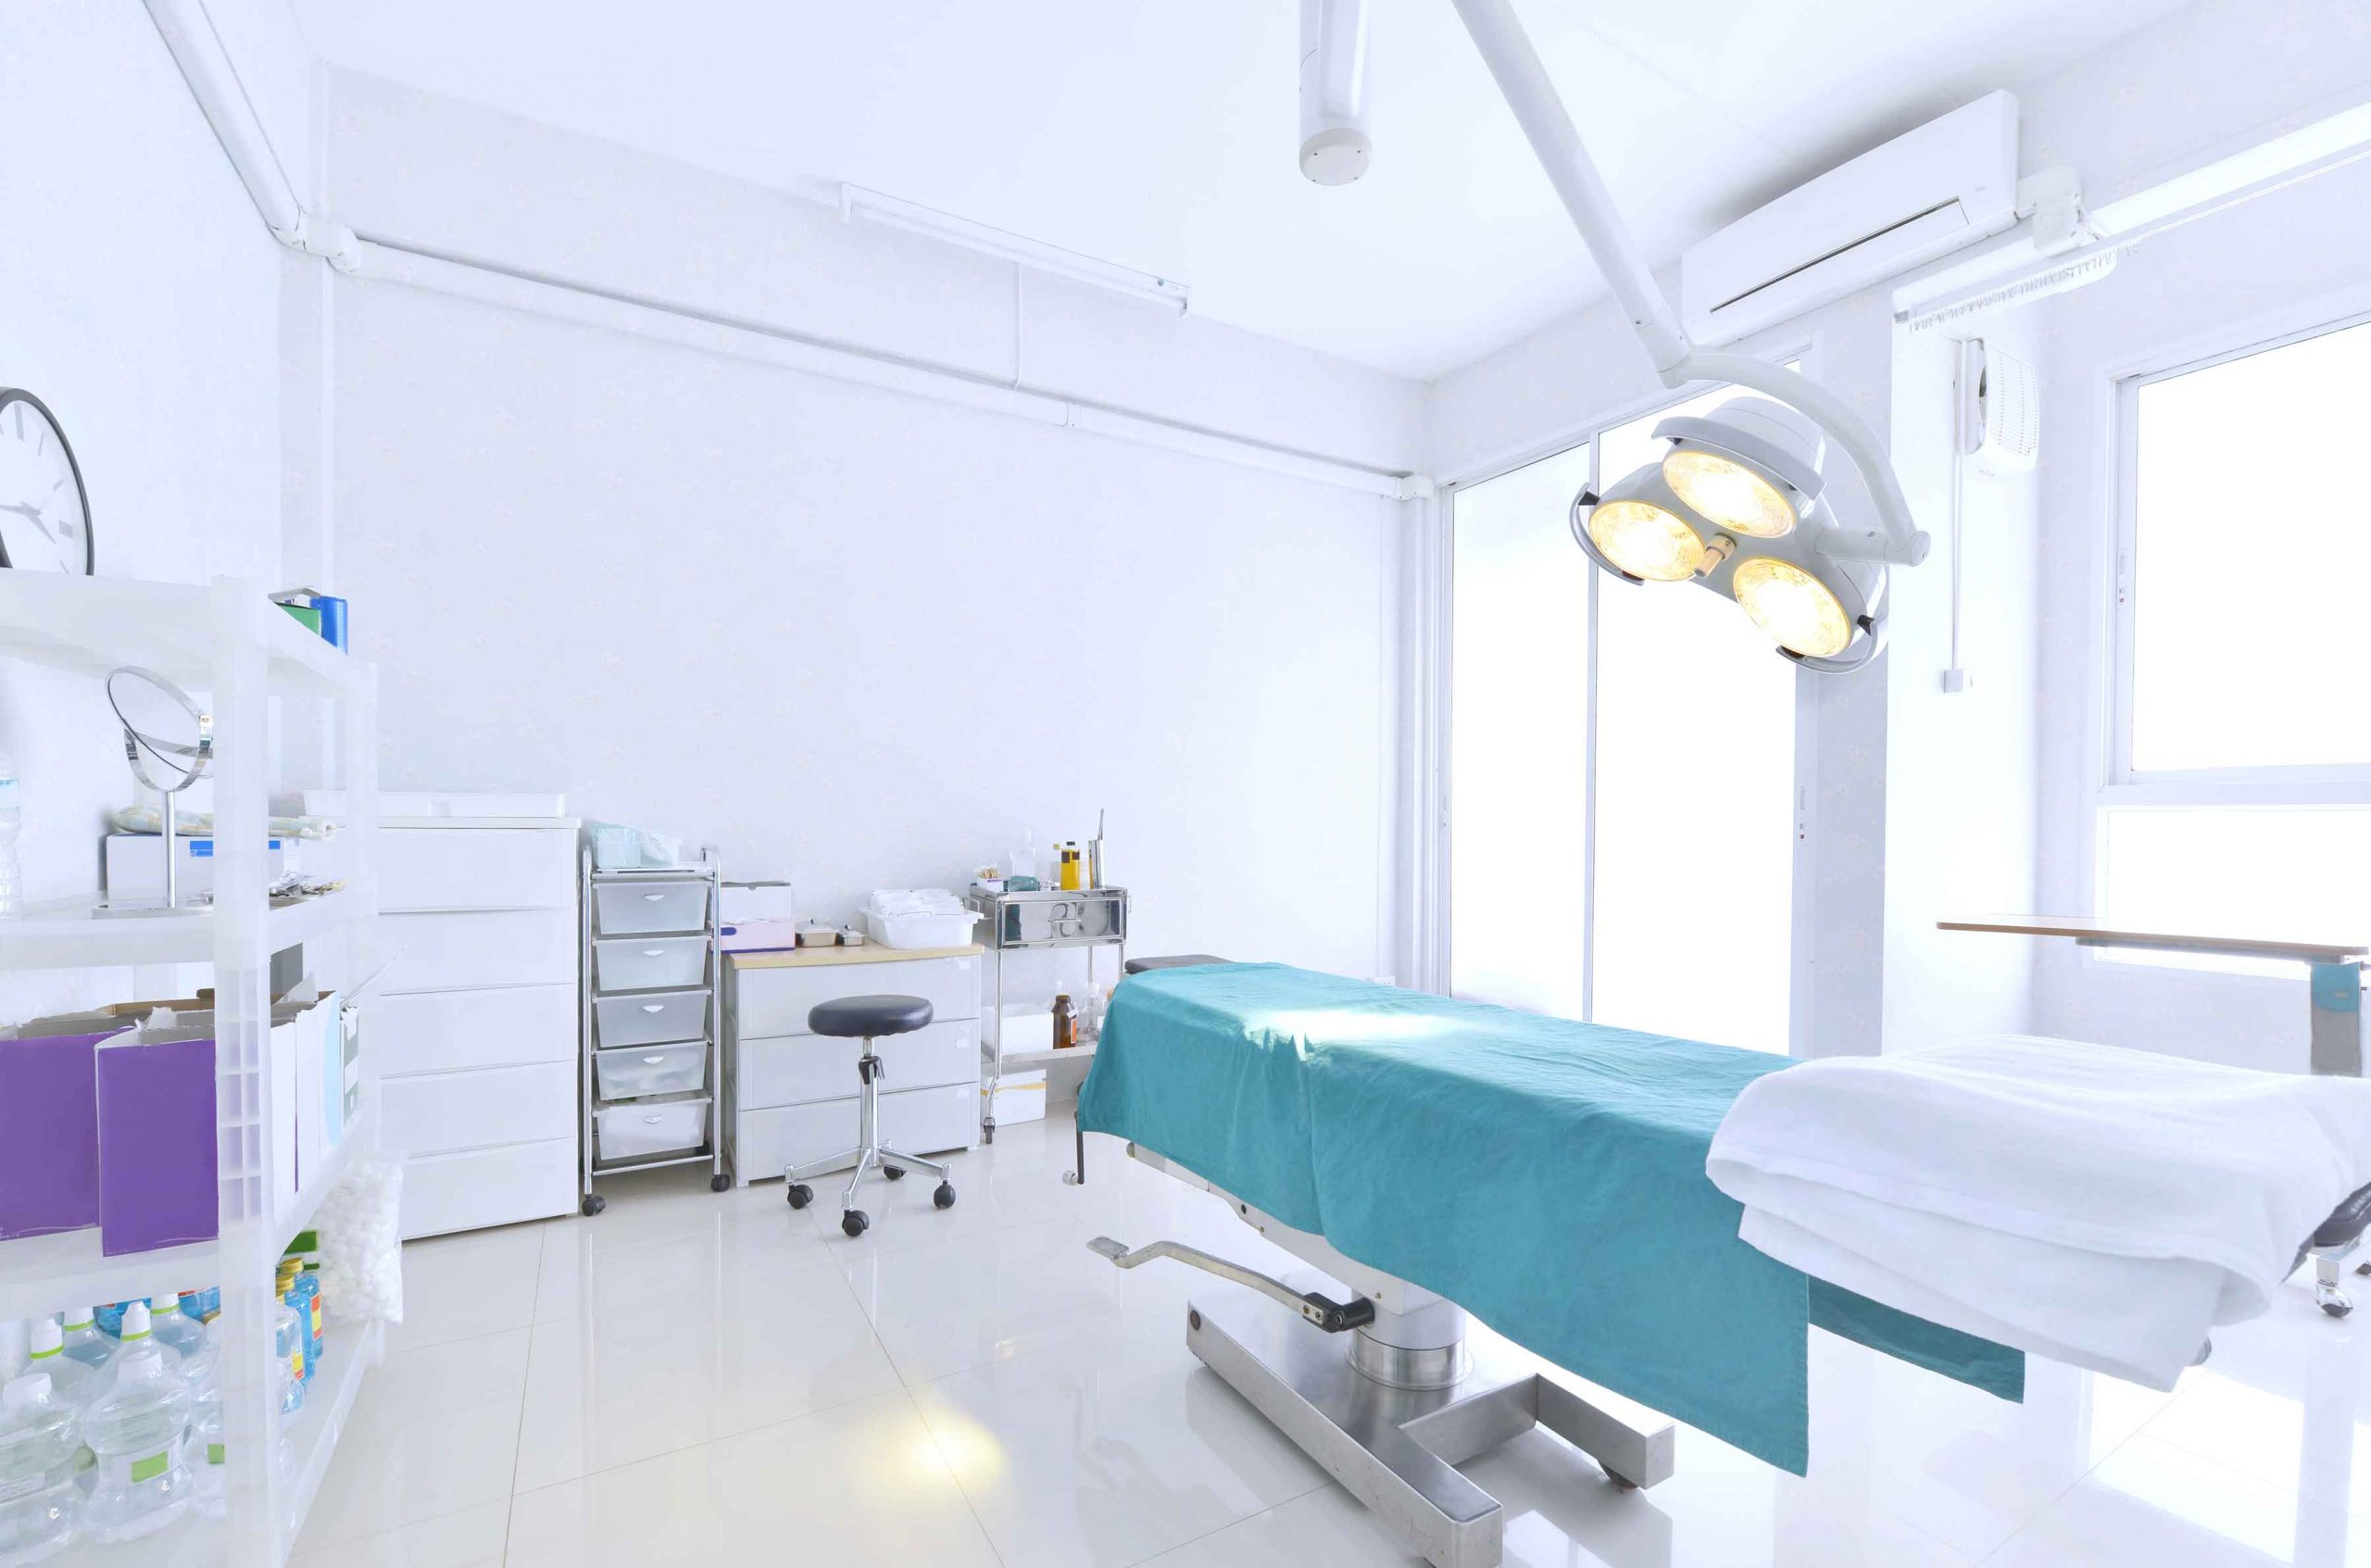 Sewa Tempat Tidur Rumah Sakit Jakarta Selatan Murah